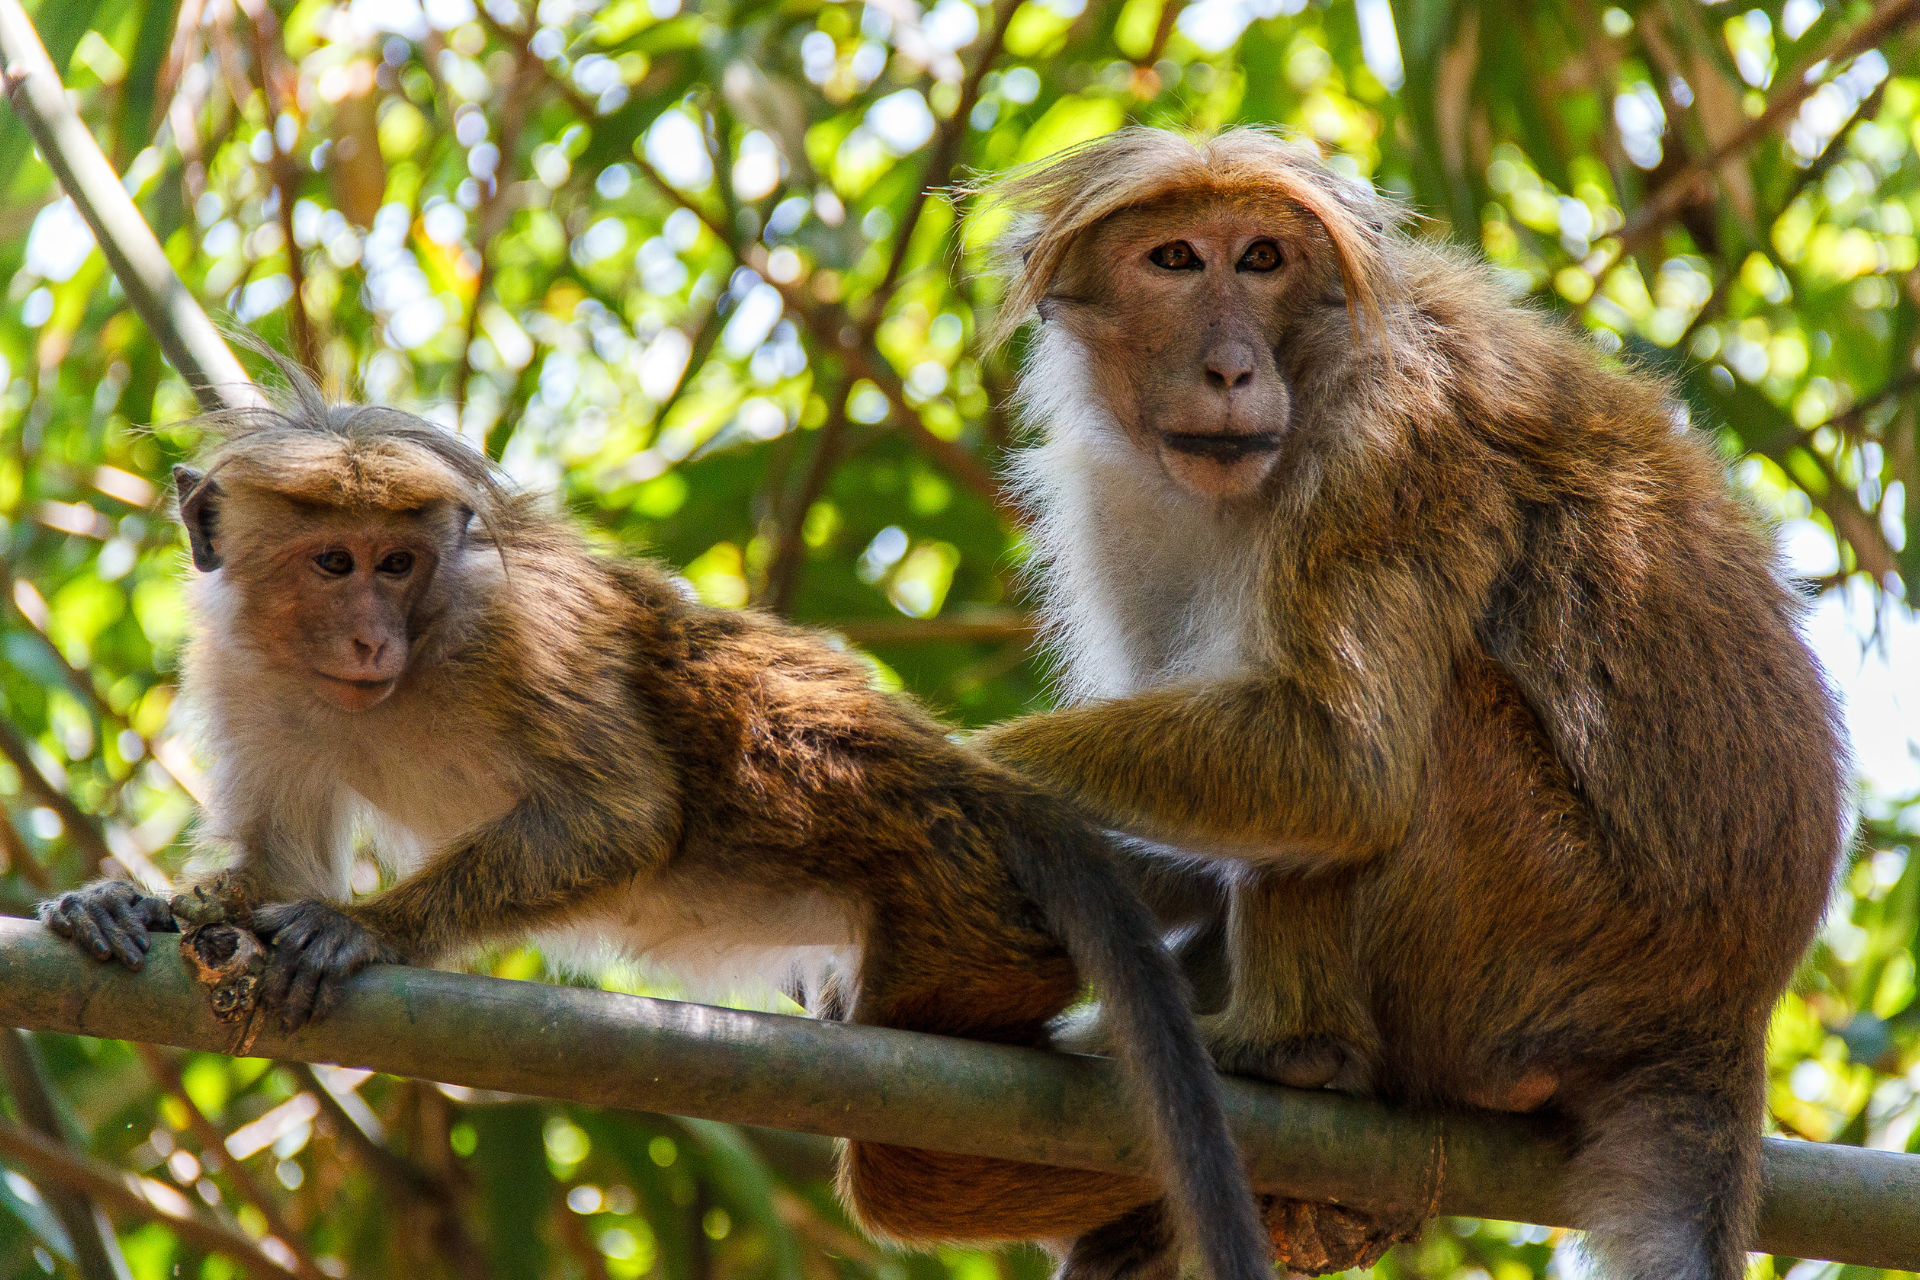 Two monkeys at the Peradeniya Botanical Garden in Kandy, Sri Lanka